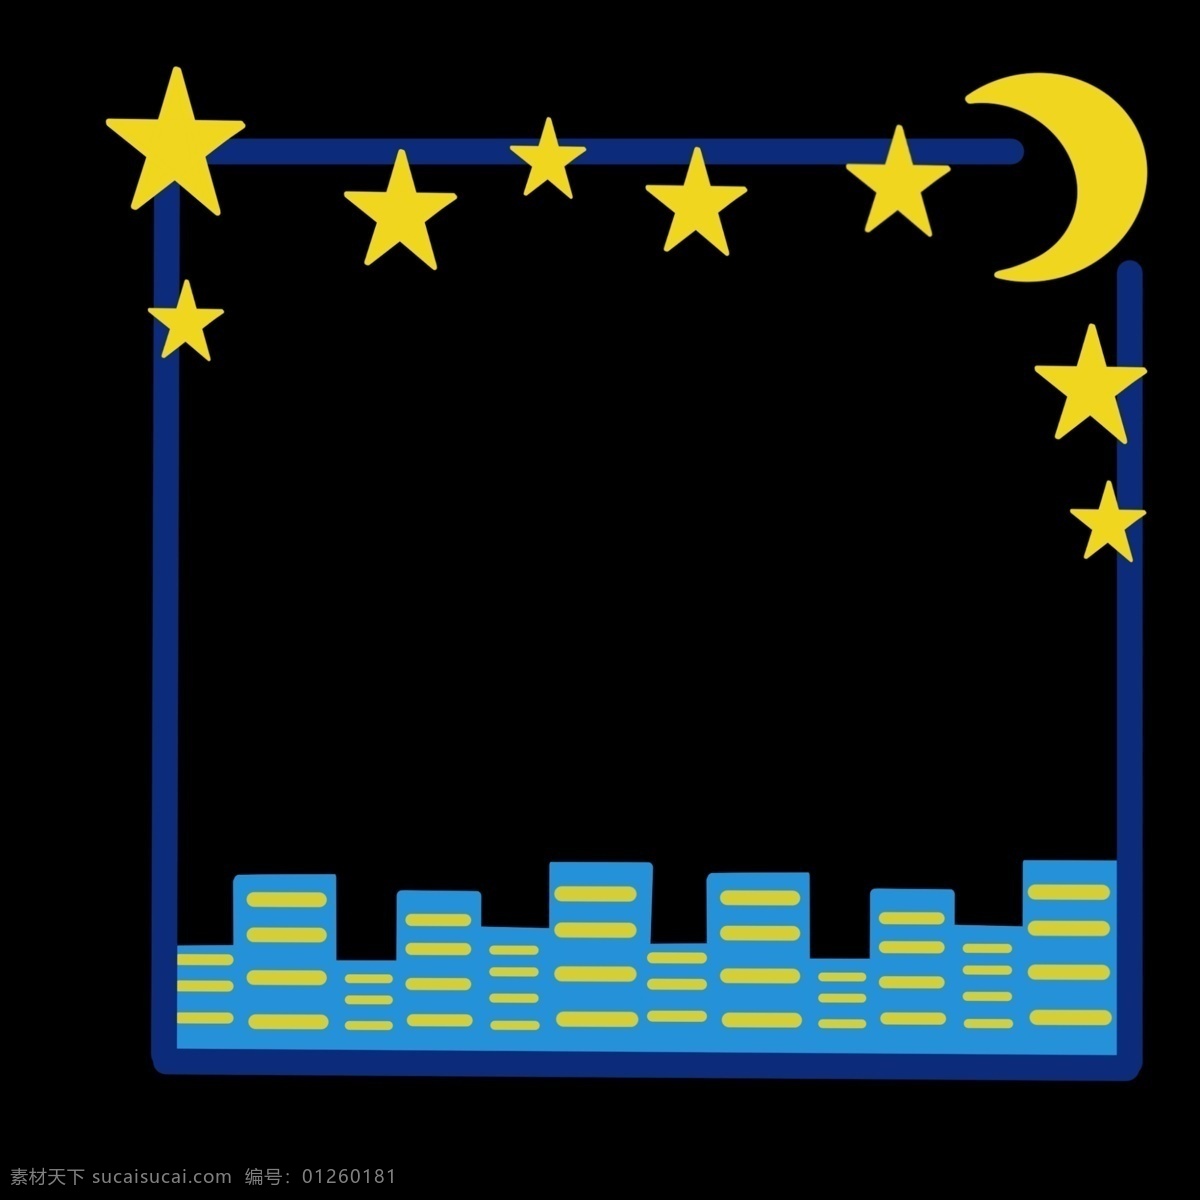 夜晚 城市 边框 插画 蓝色边框 方形边框 黄色星星 黄色月亮 晚上 建筑边框 城市的夜晚